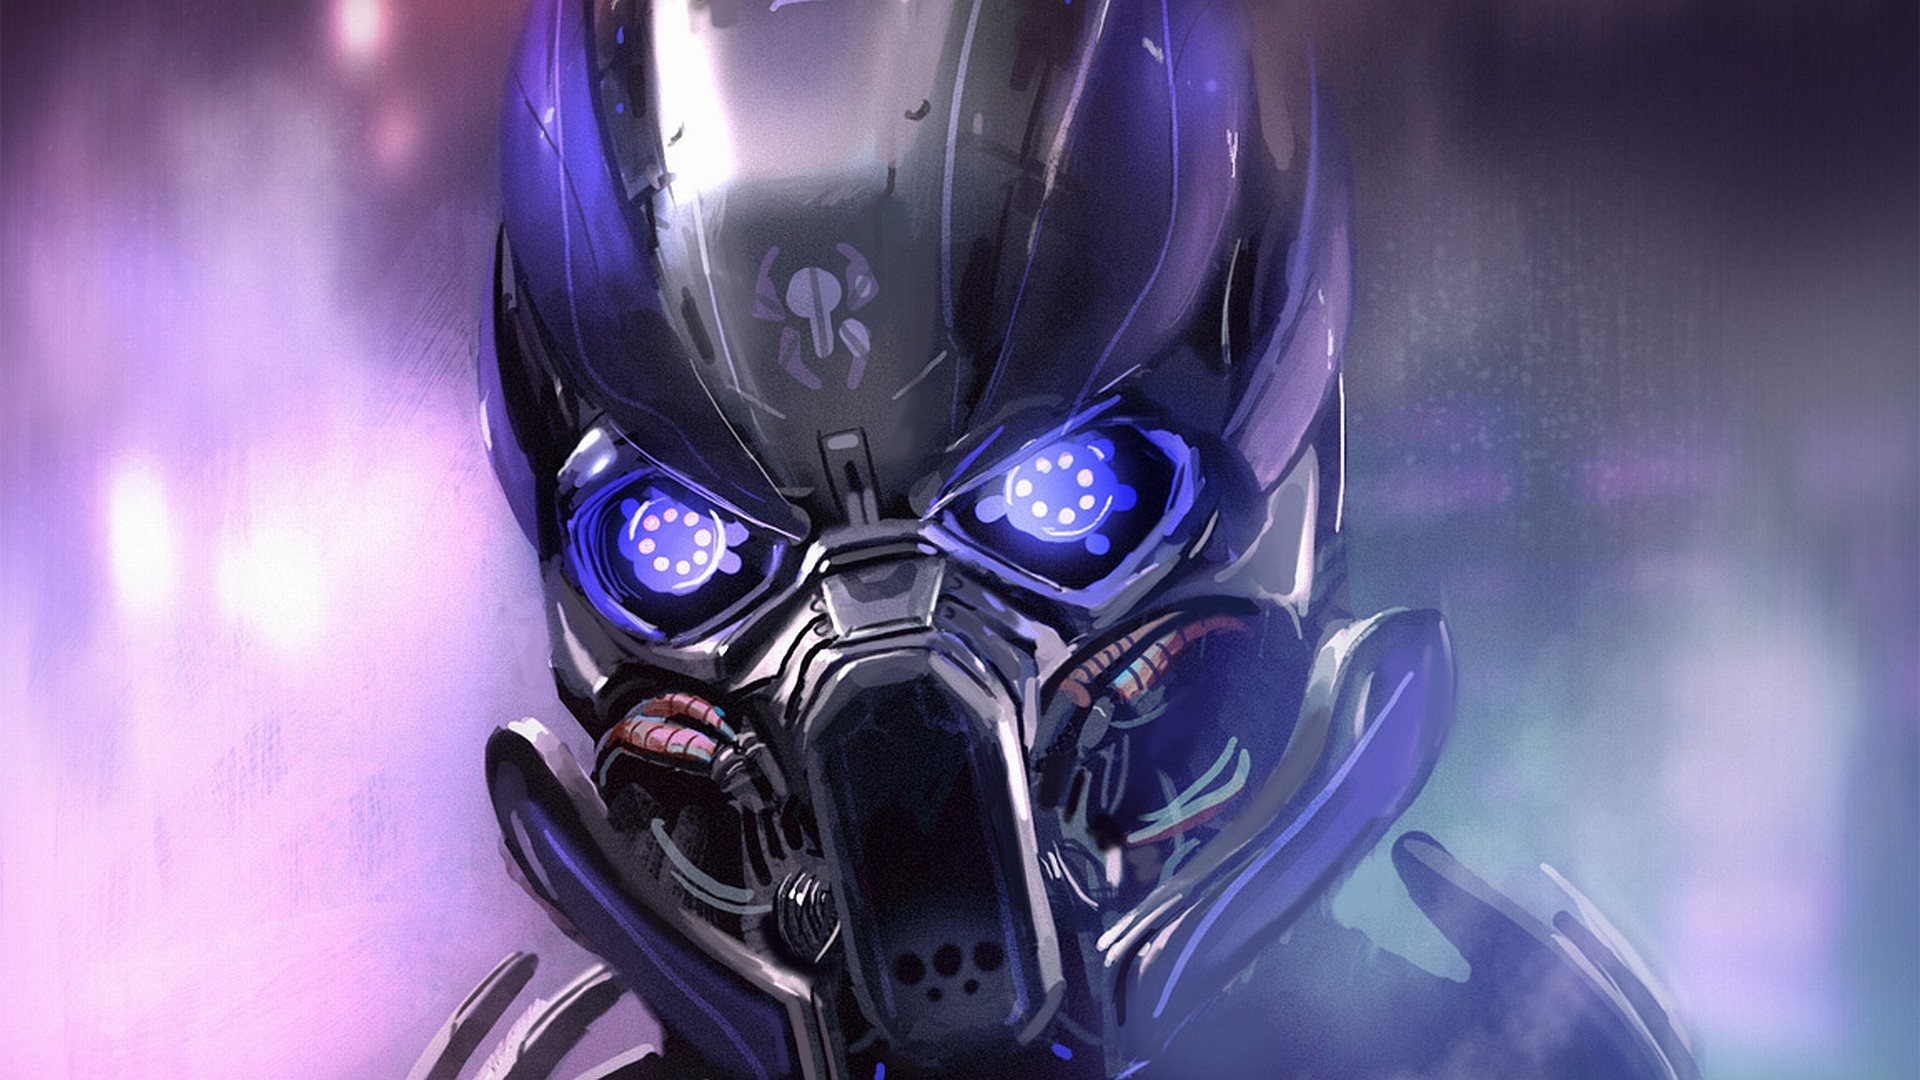 El primer encuentro extraterrestre será con cyborgs (Video)